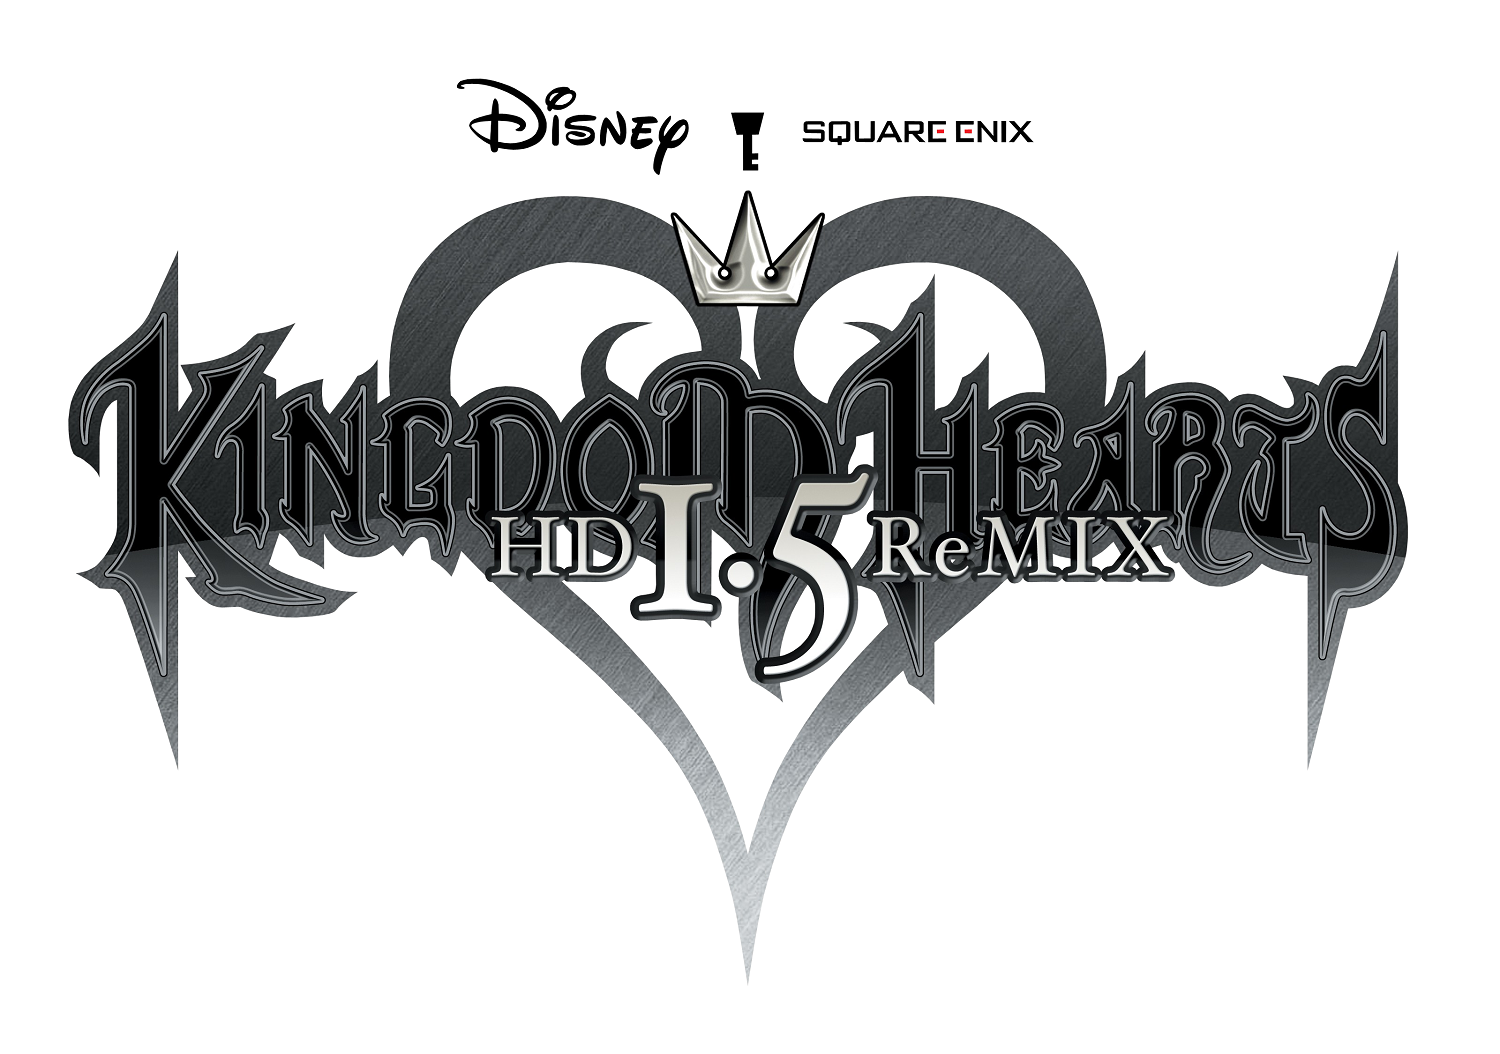 [CRITIQUE] Kingdom Hearts HD 1.5 ReMIX